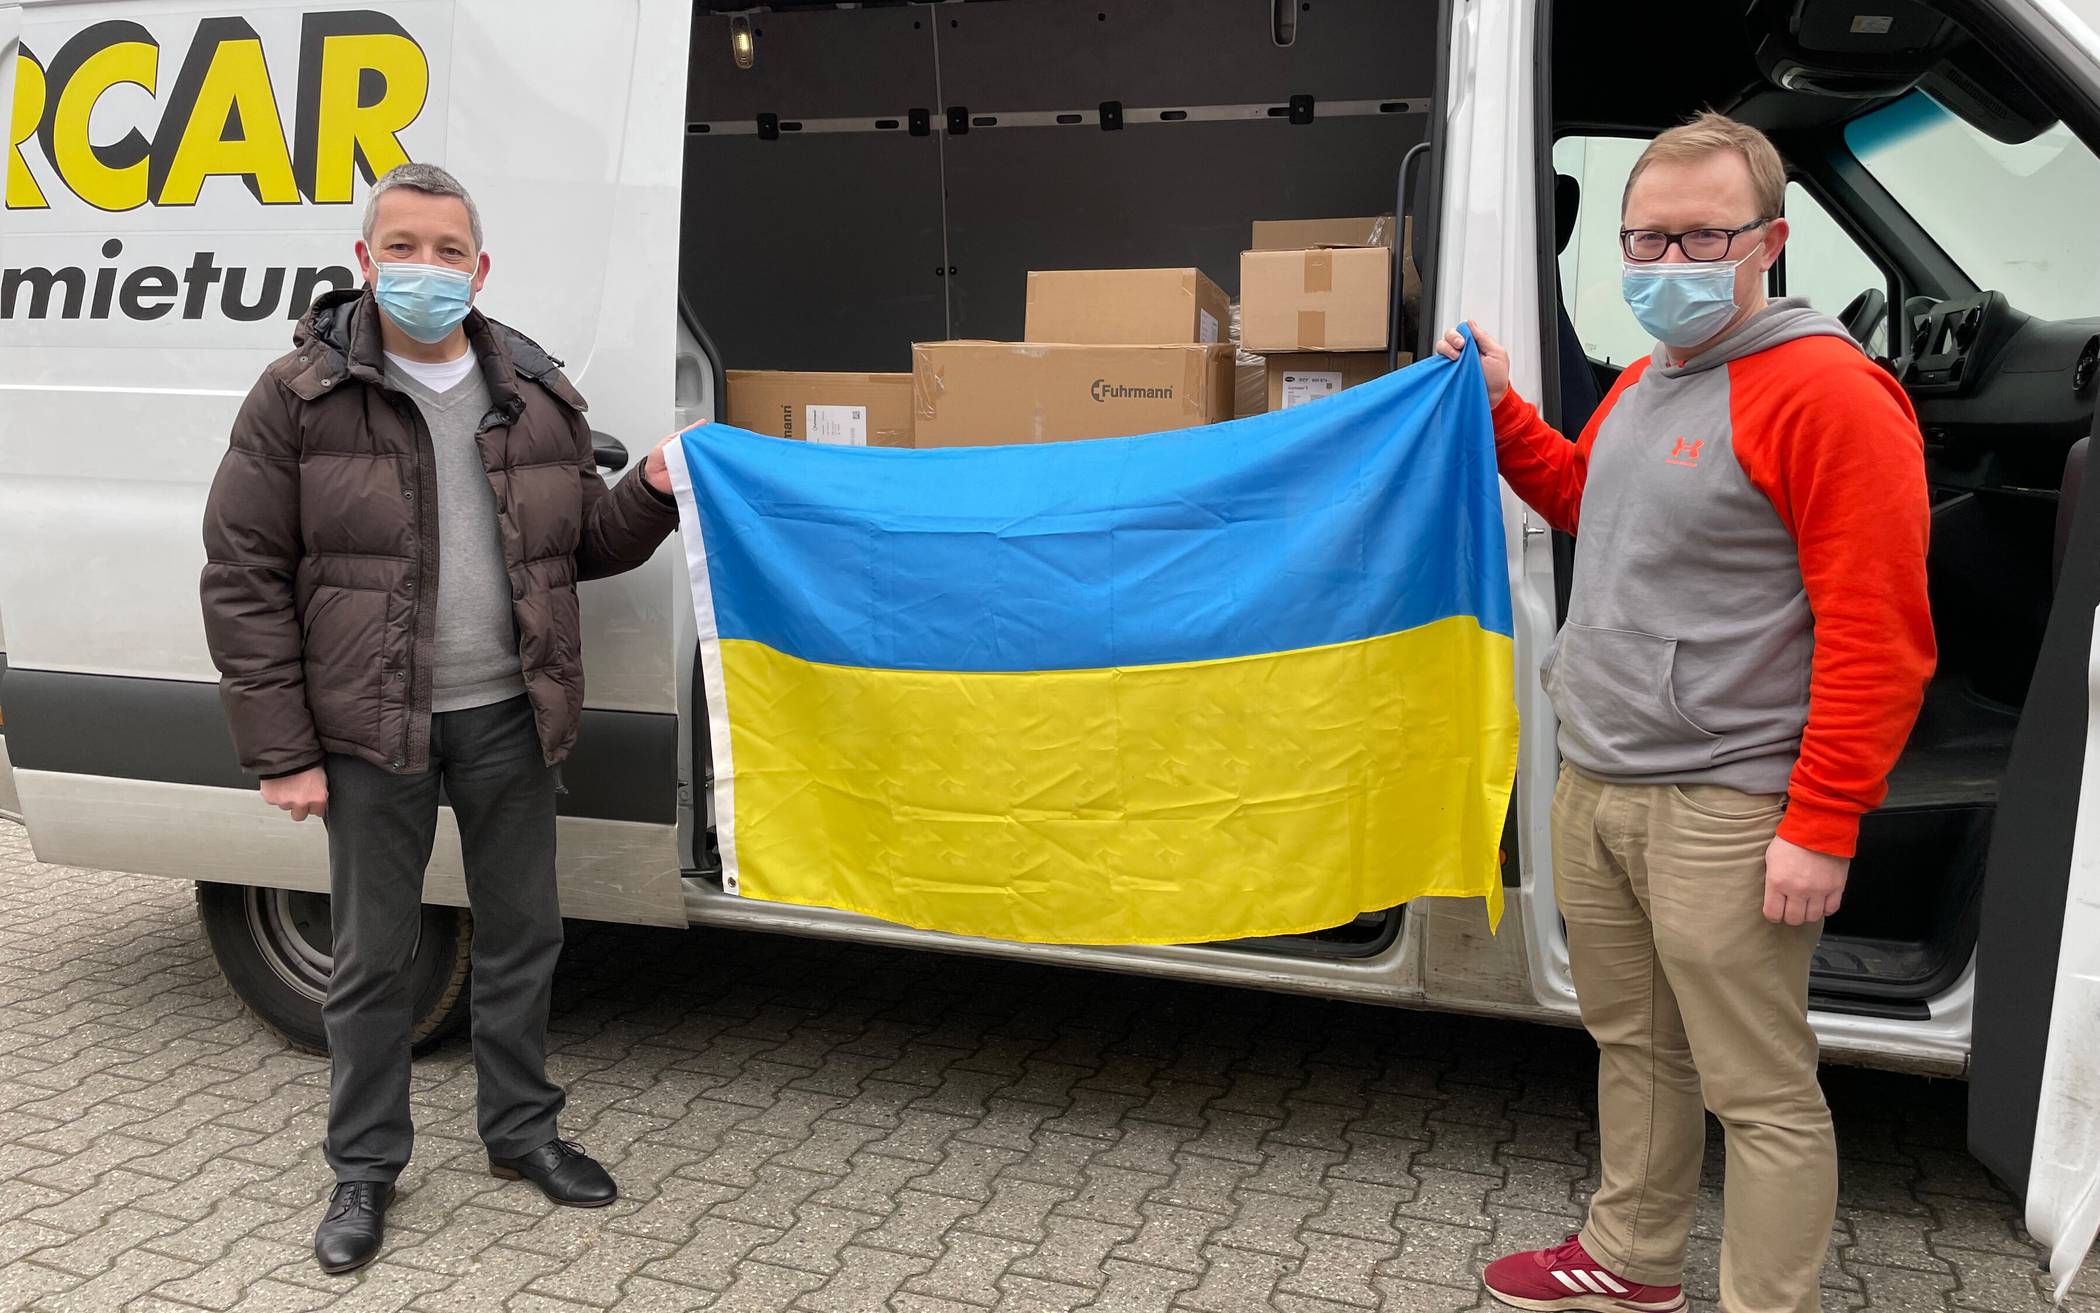  Jürgen Aretz (links) und Andriy Minayev bei der Übergabe der Hilfsmittel. Die St. Augustinus Gruppe spendete dutzende Kartons gefüllt mit Verbandsmaterial, Schmerzmitteln, Antibiotika und mehr. 